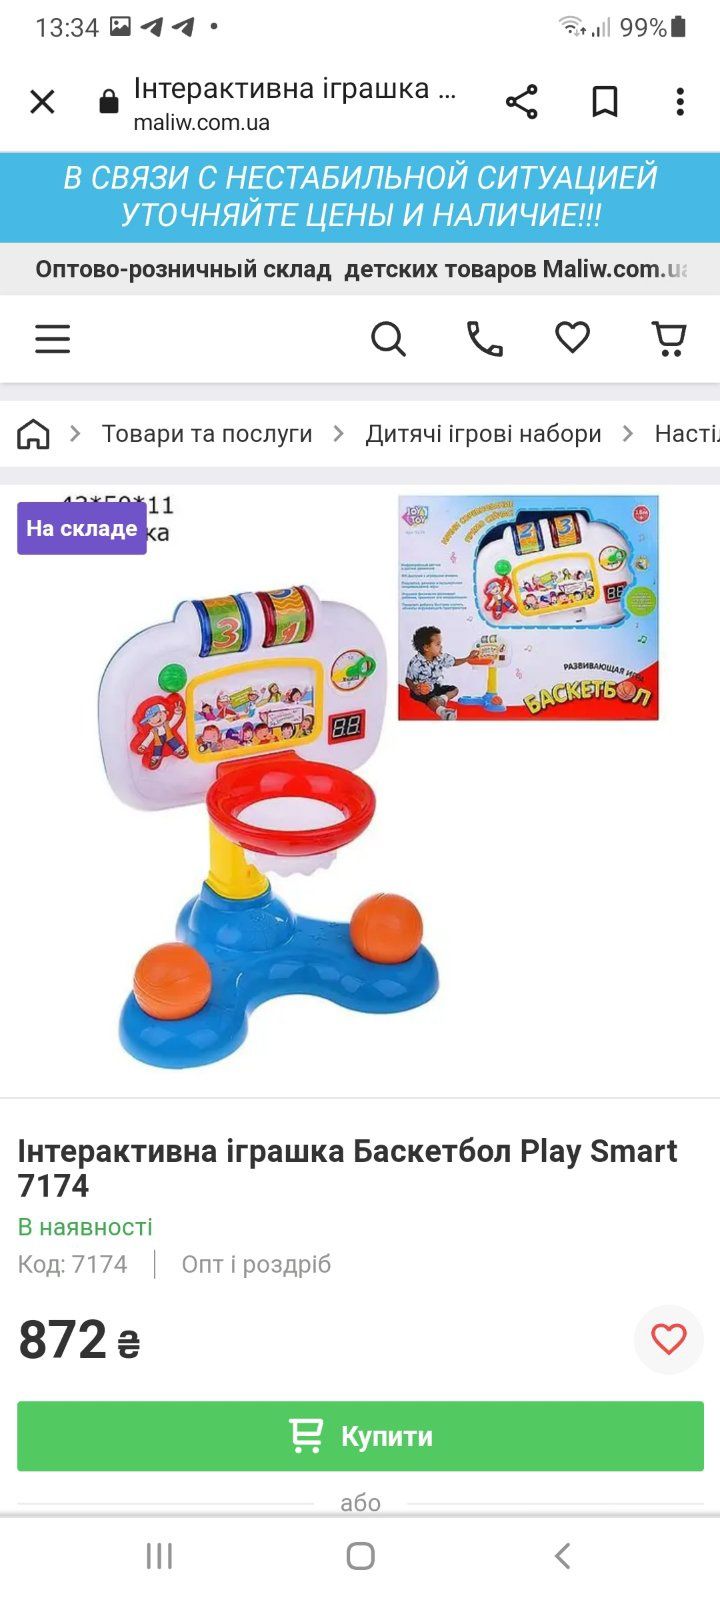 Інтерактивна іграшка Баскетбол можно для самих маленьких